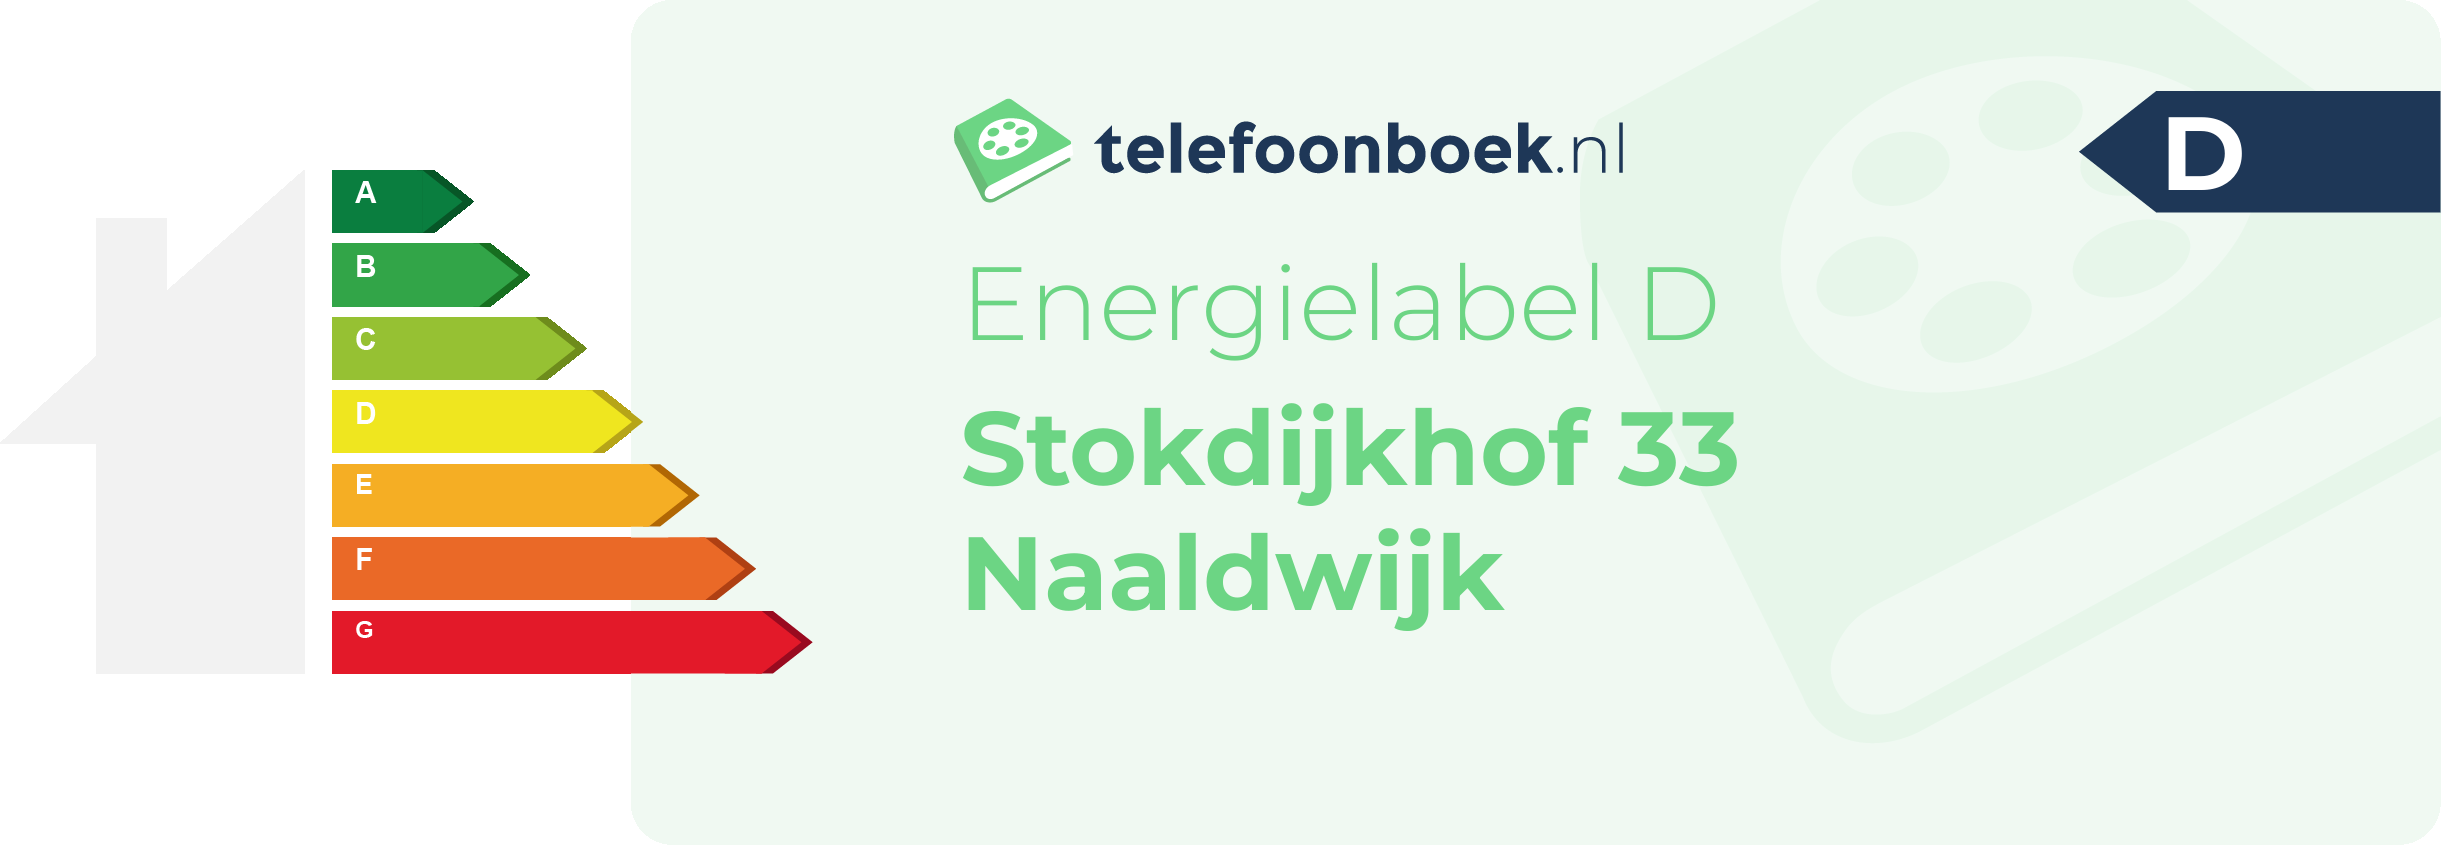 Energielabel Stokdijkhof 33 Naaldwijk